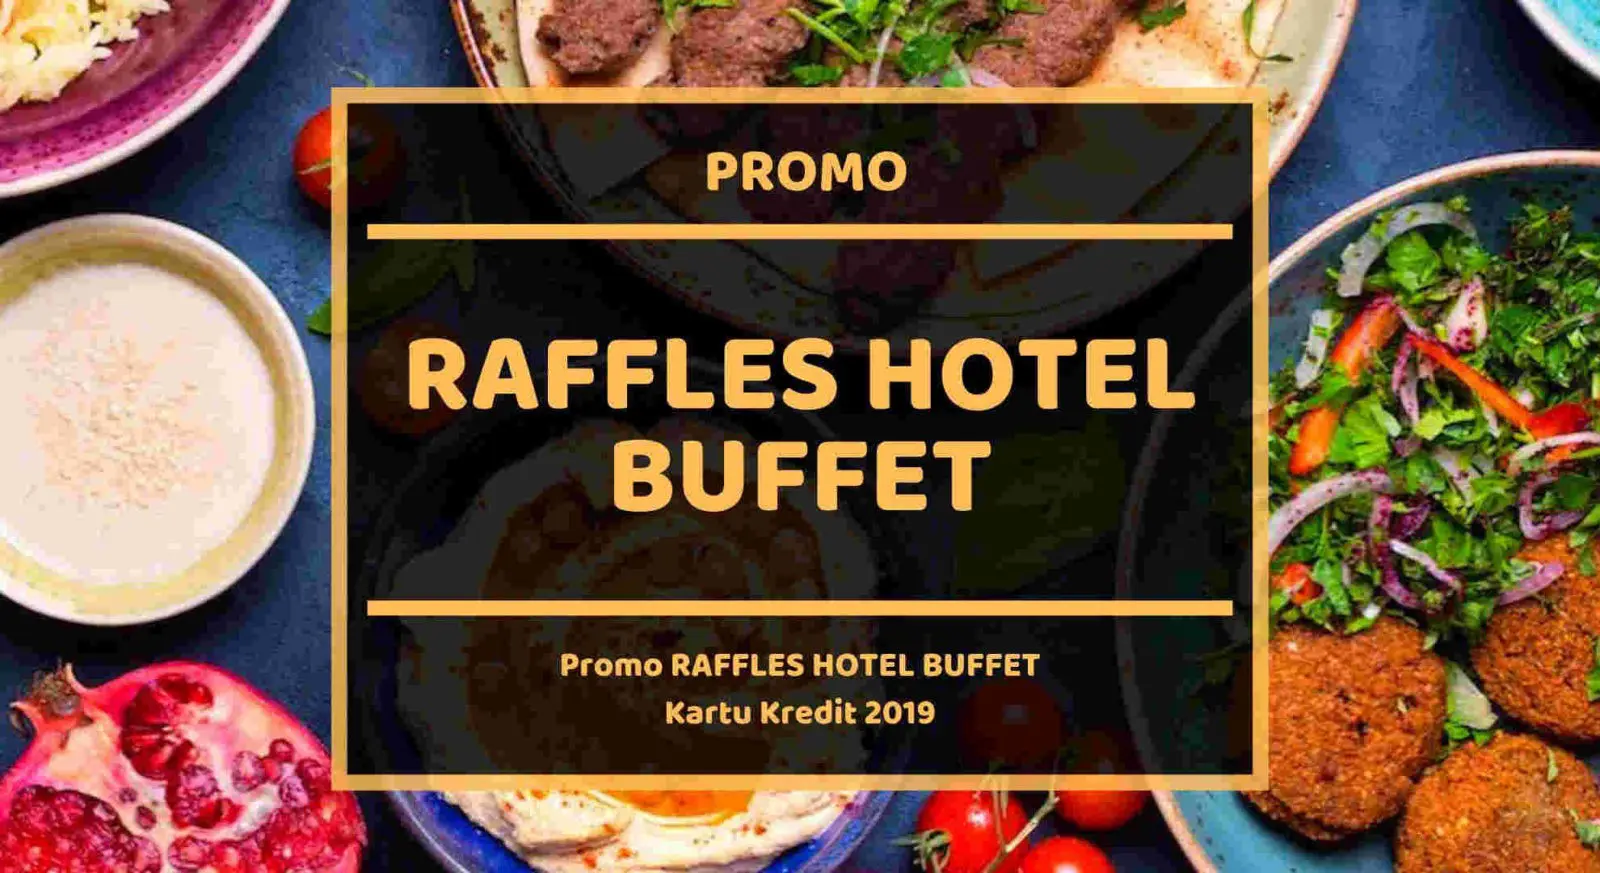 Promo Raffles Hotel Buffet